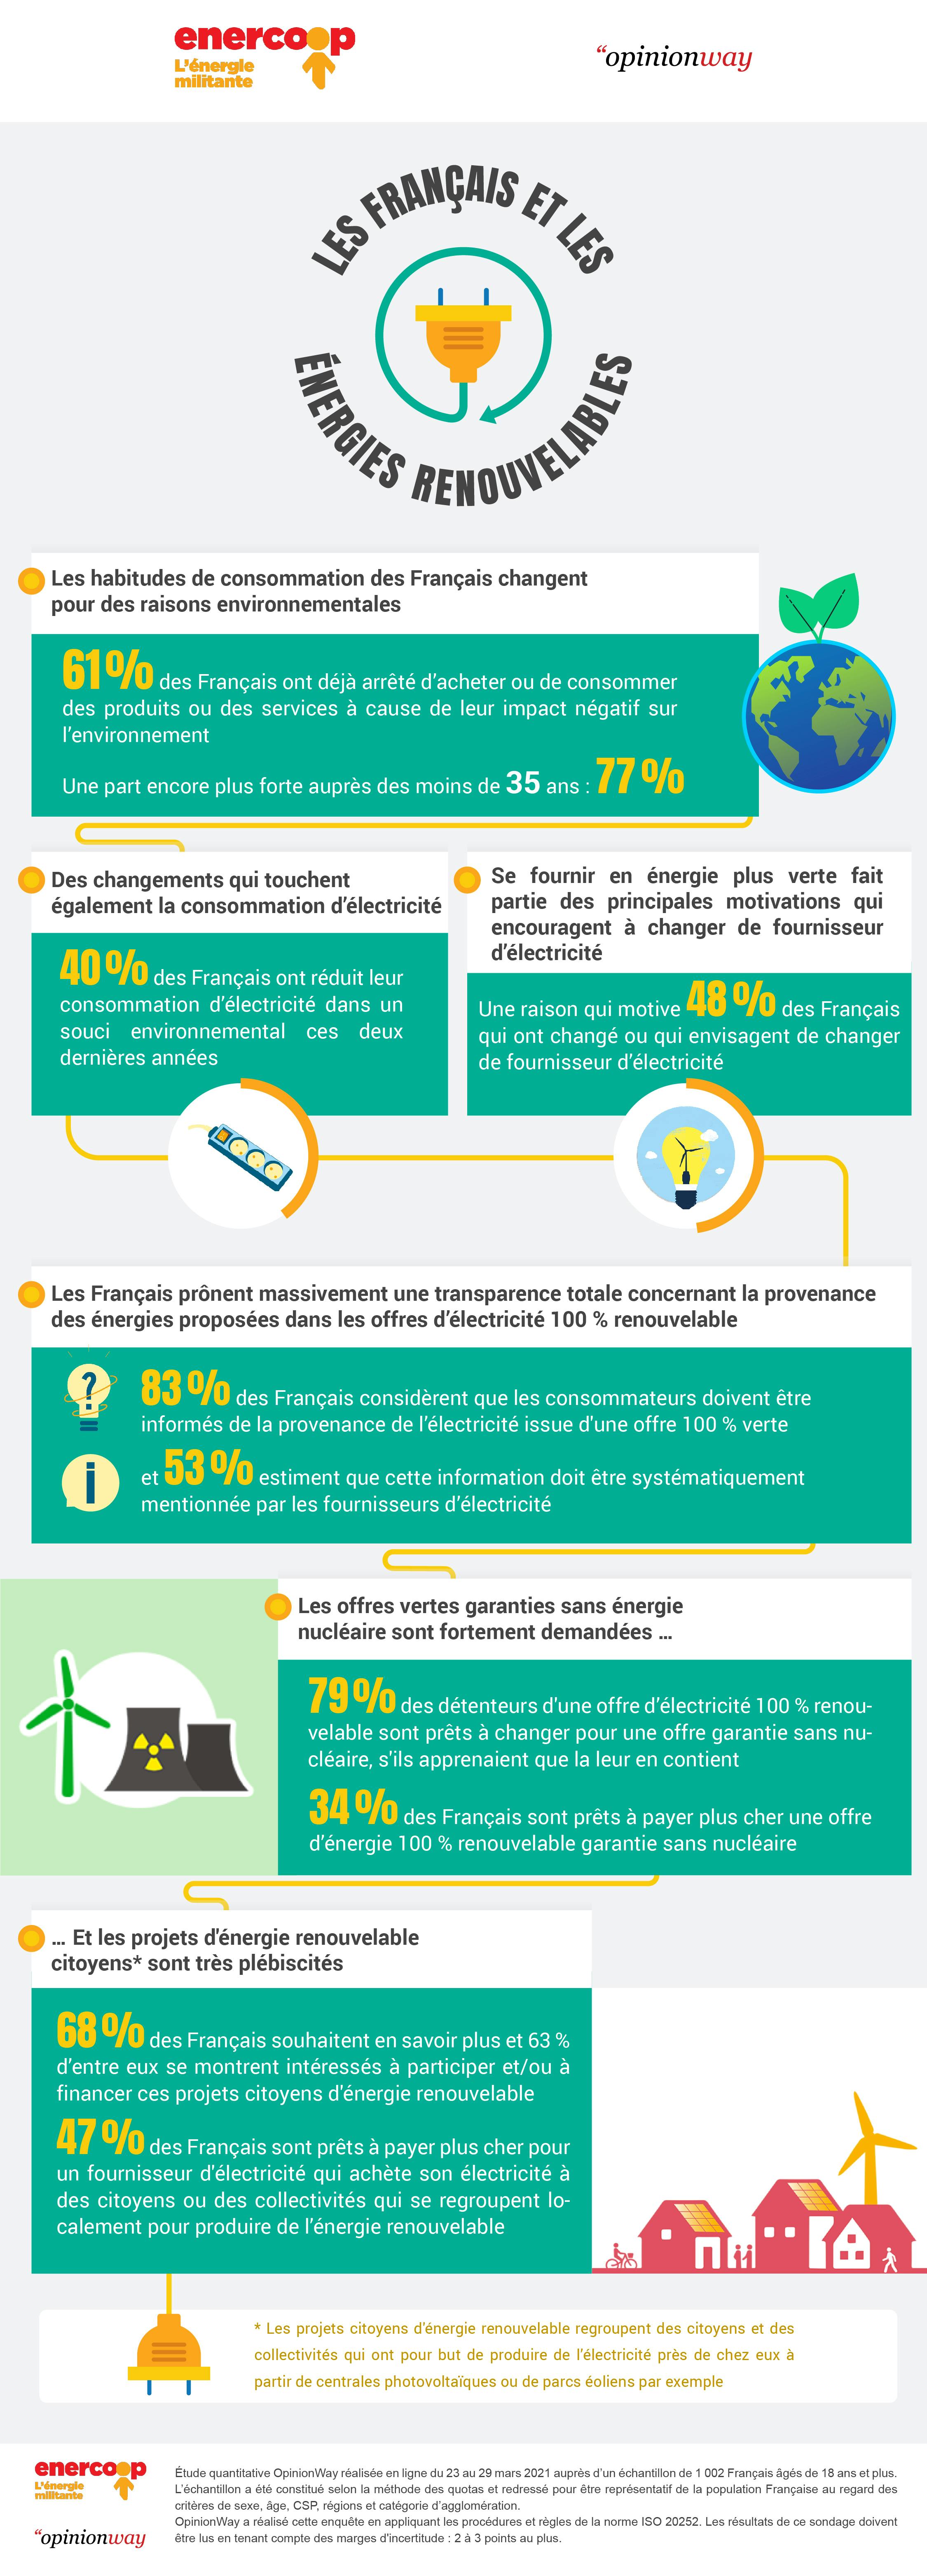 Sondage Enercoop-OpinionWay Les français et les énergies renouvelables : les 10 chiffres à retenir